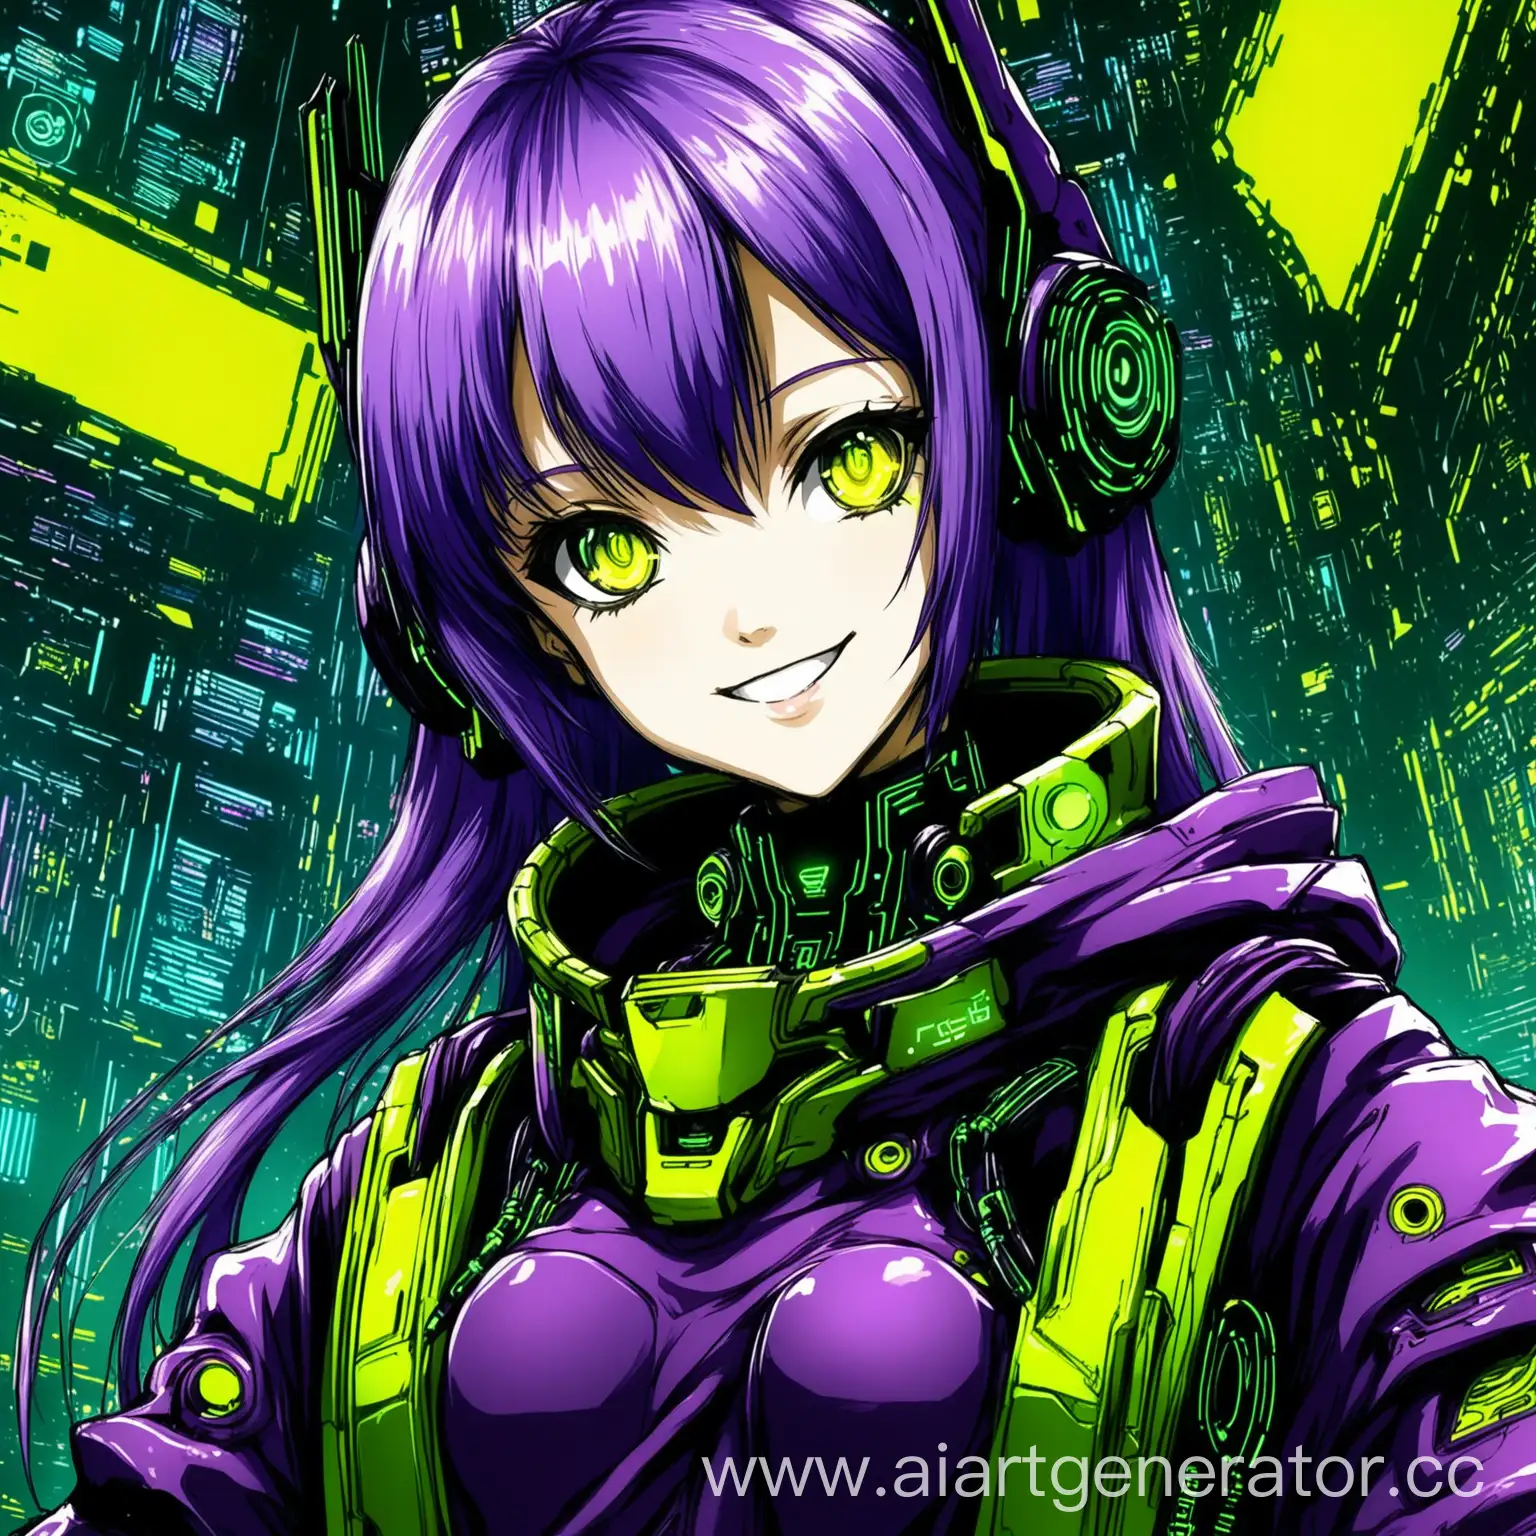 аниме киберпанк девушка улыбается кибер ева цвета зеленый фиолетовый и желтый аниме рисовкааниме киберпанк девушка улыбается кибер ева цвета зеленый фиолетовый и желтый аниме рисовка